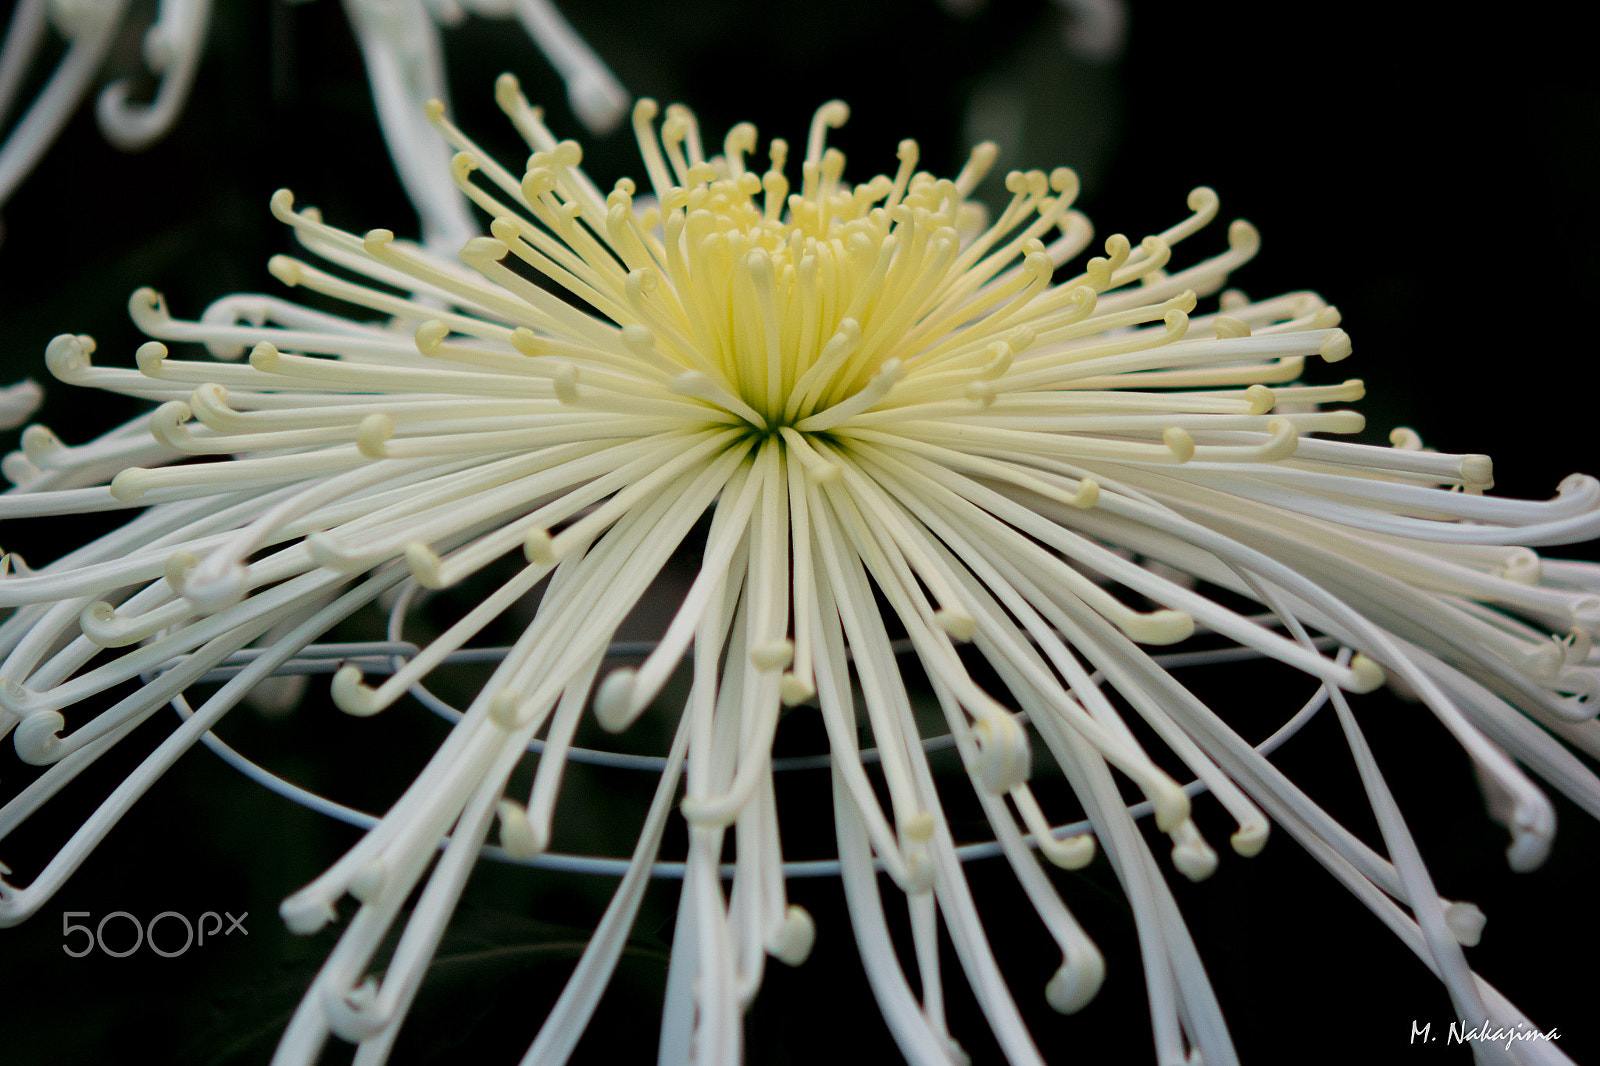 Nikon 1 V3 sample photo. Chrysanthemum -4 photography